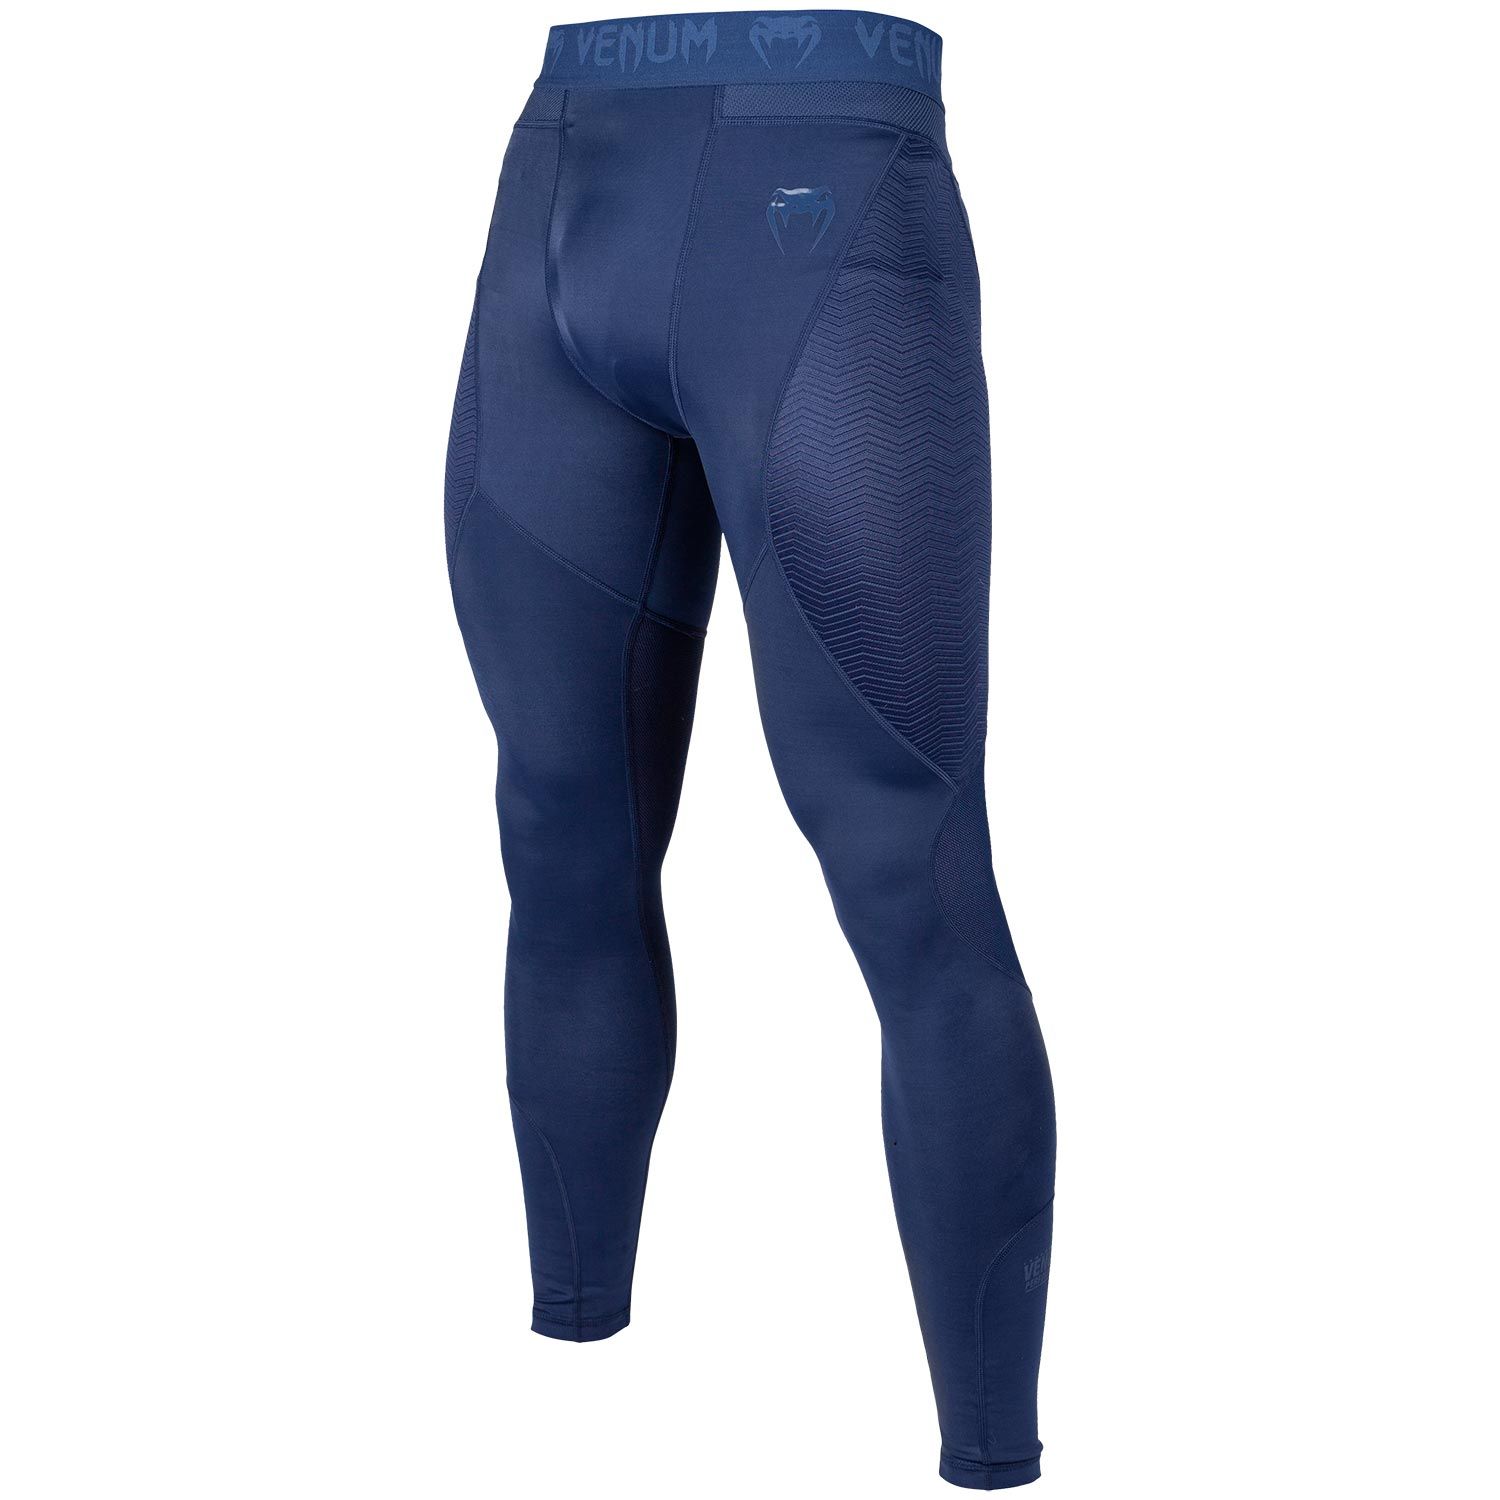 Компрессионные штаны Venum G-Fit Navy Blue